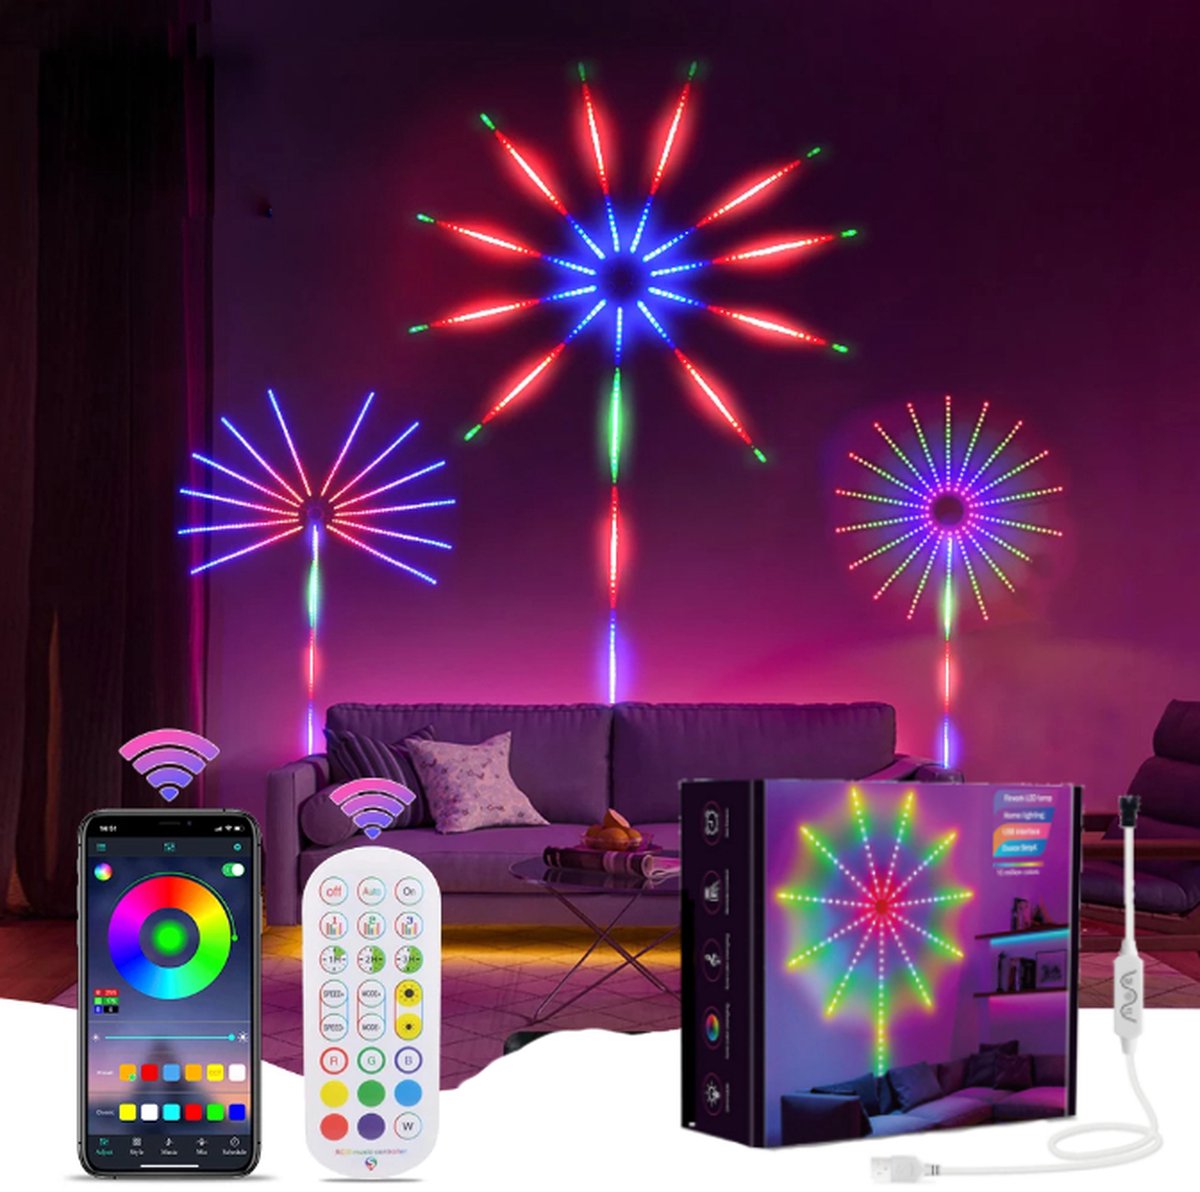 Levabe - LED vuurwerk lamp - Afstandsbediening en App Functie - LED strip verlichting - Muziek Synchronisatie - Discolamp - Nieuwjaar versiering - Oud en nieuw decoratie - Ker st verlichting - Multicolor